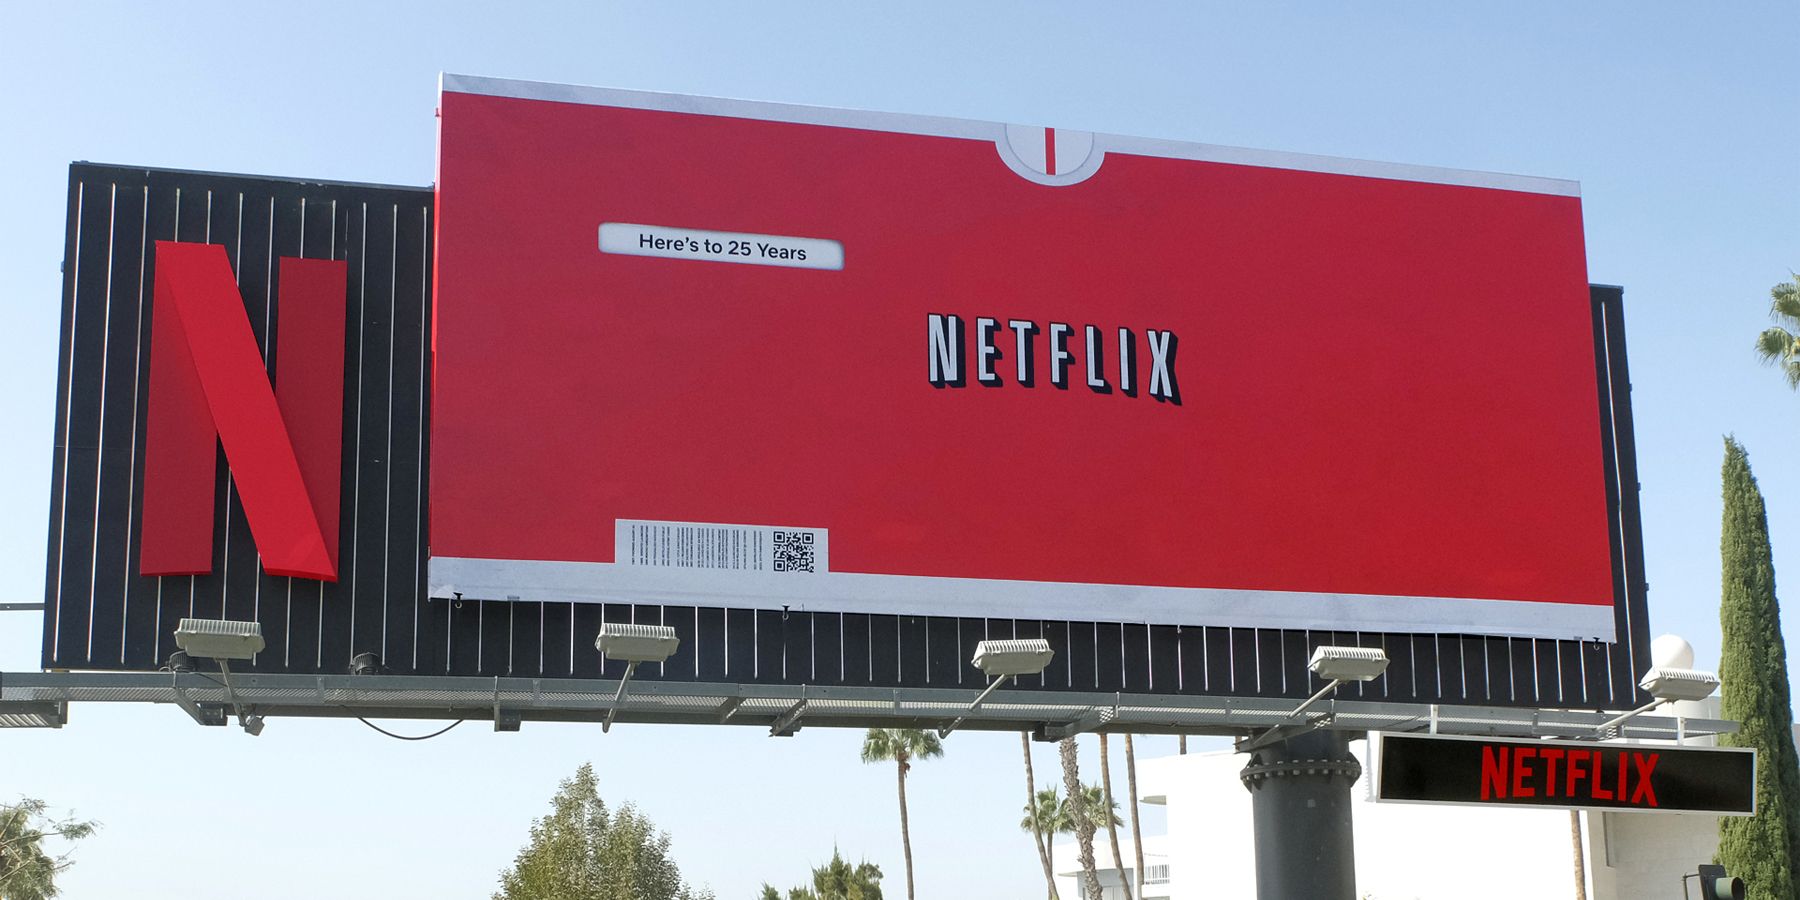 Netflix Celebrates 25 Years - Netflix Tudum